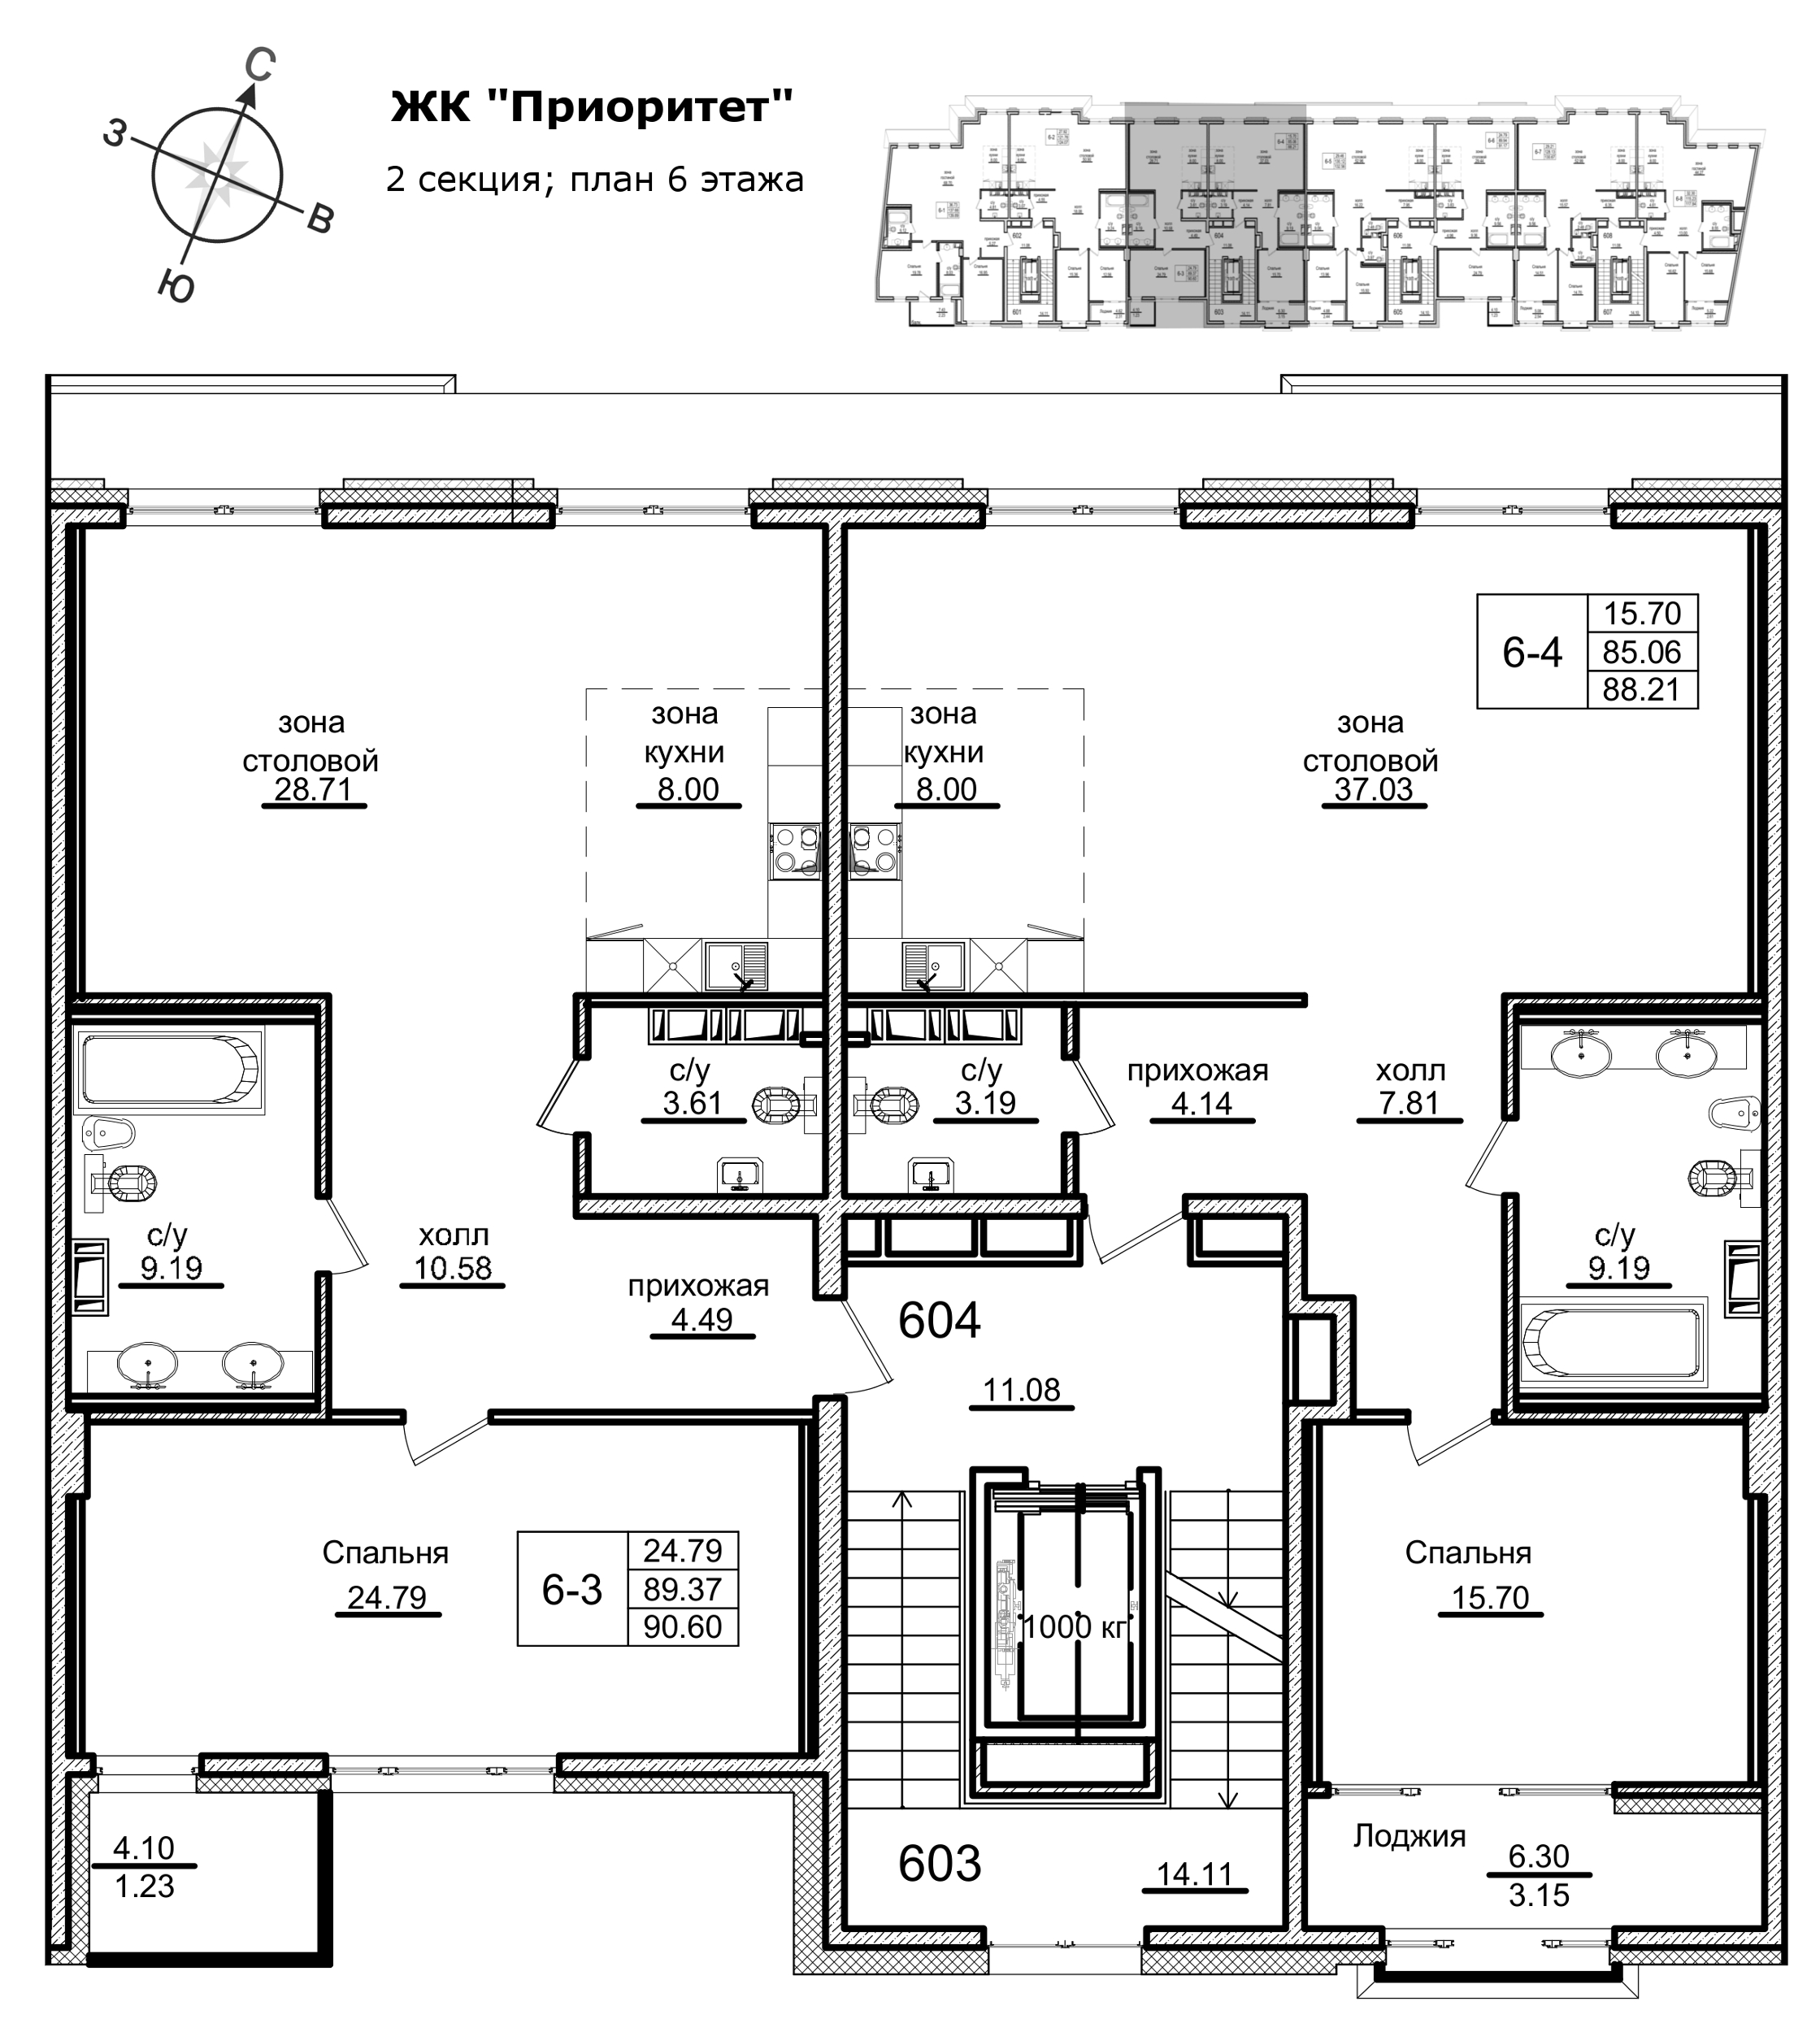 2-комнатная (Евро) квартира, 94.6 м² в ЖК "Приоритет" - планировка этажа